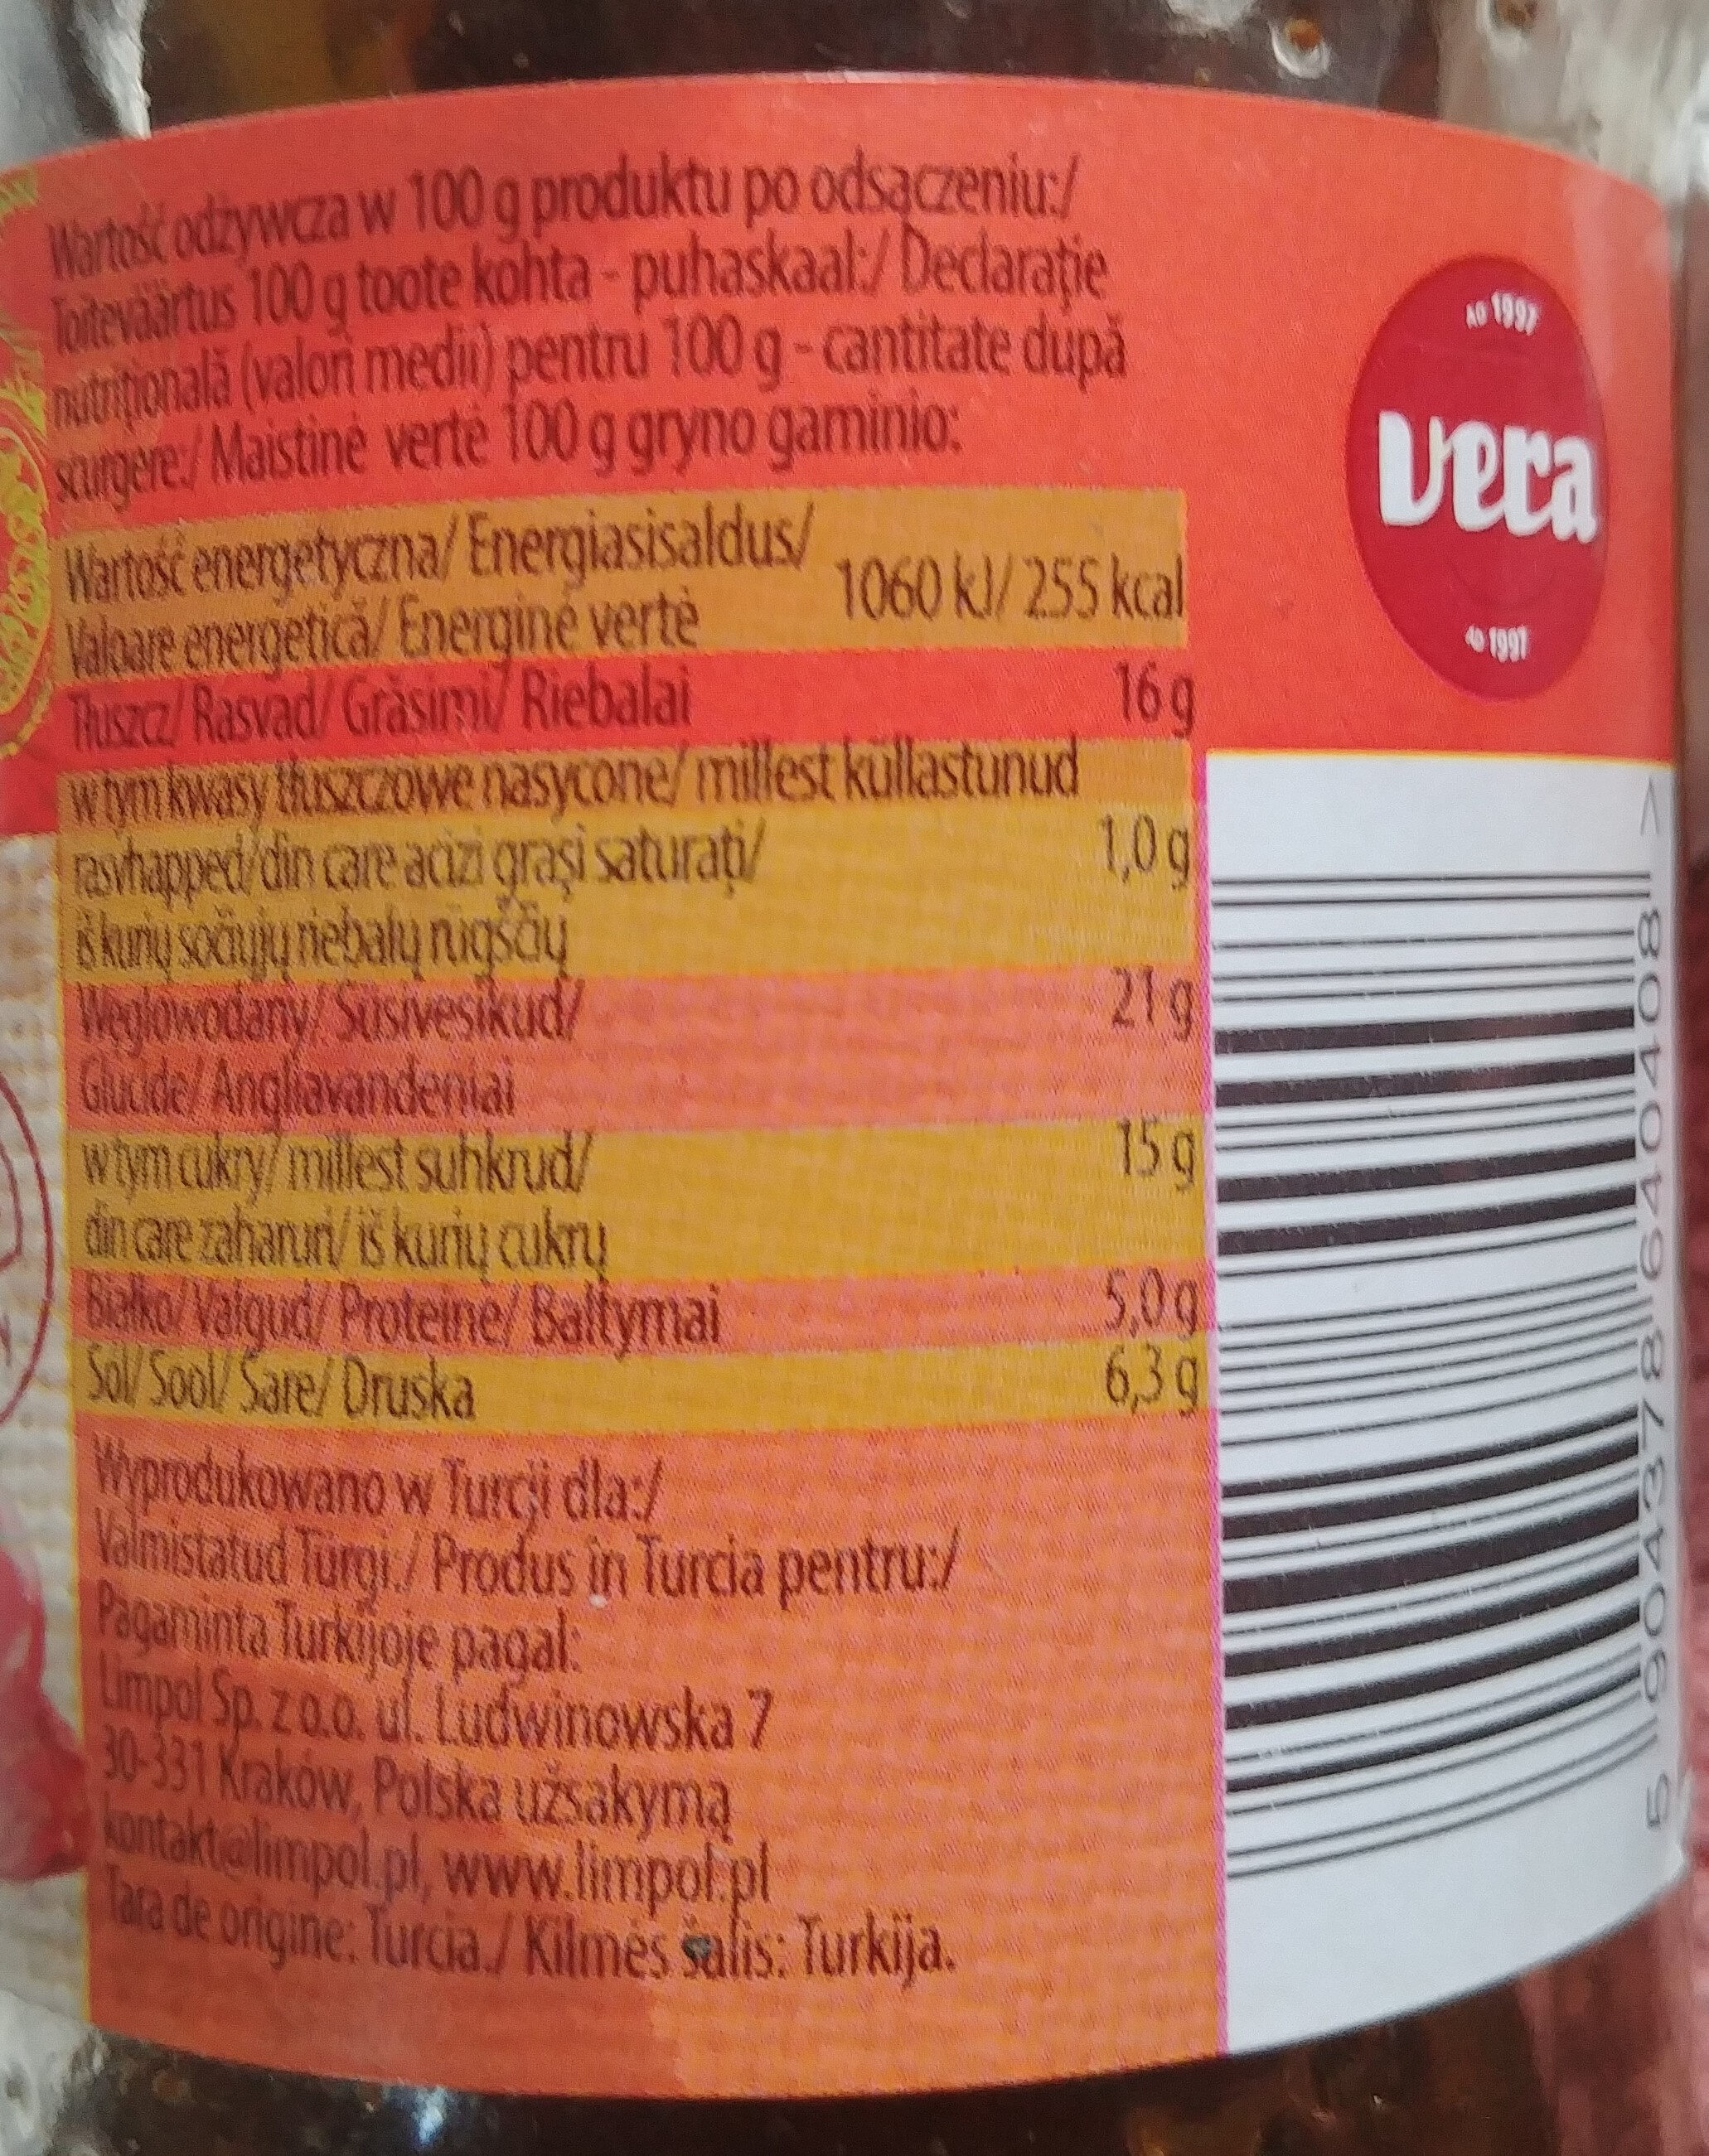 Pomidory suszone na słońcu w oleju - Nutrition facts - pl